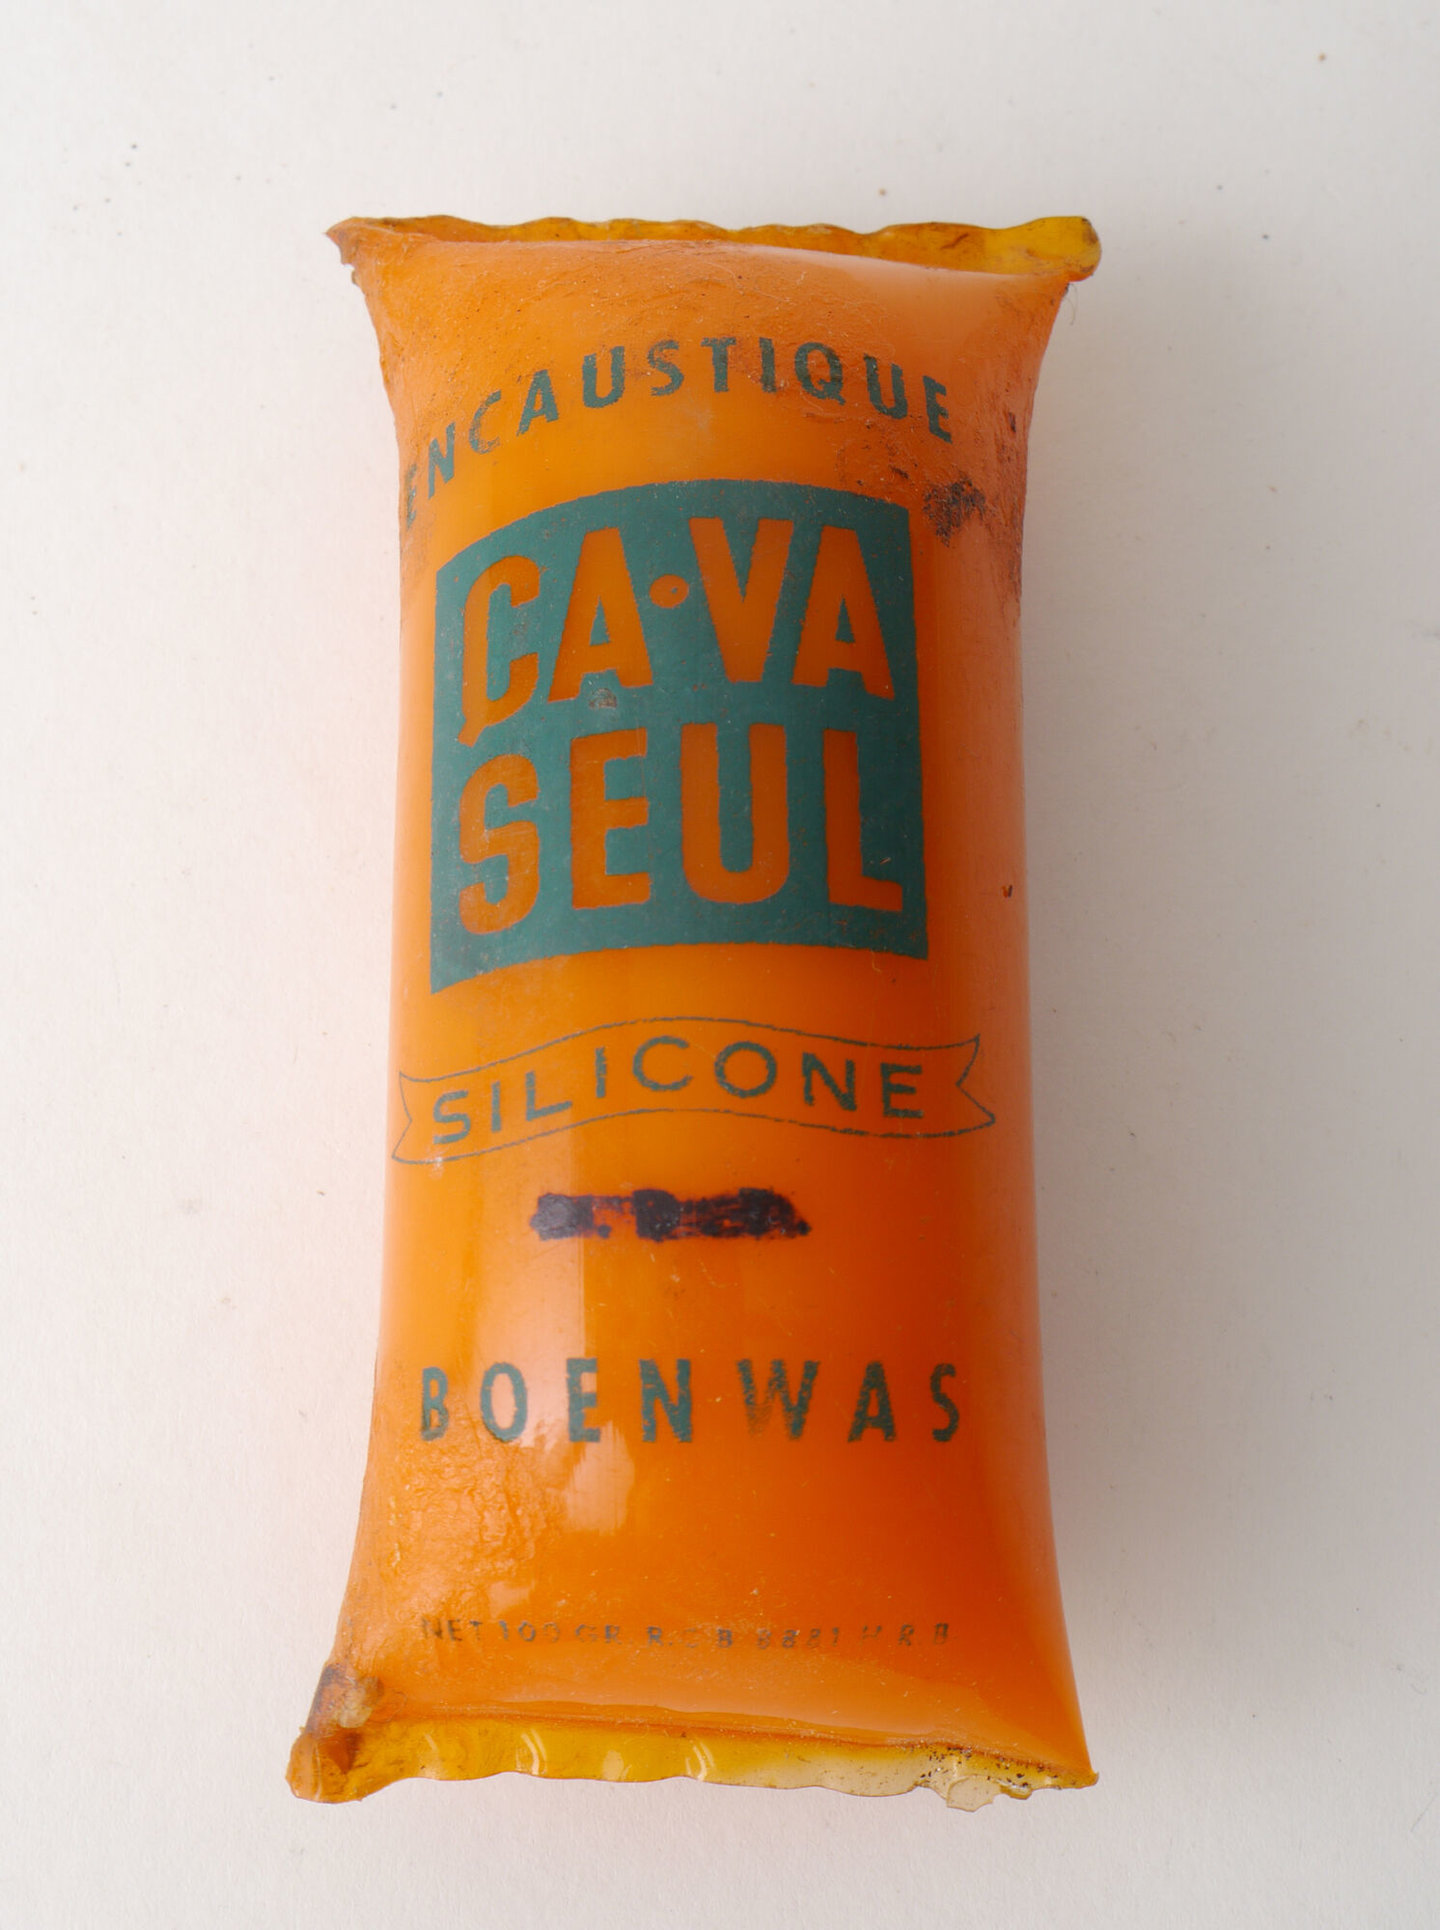 Verpakking met boenwas van het merk Ça-va-seul